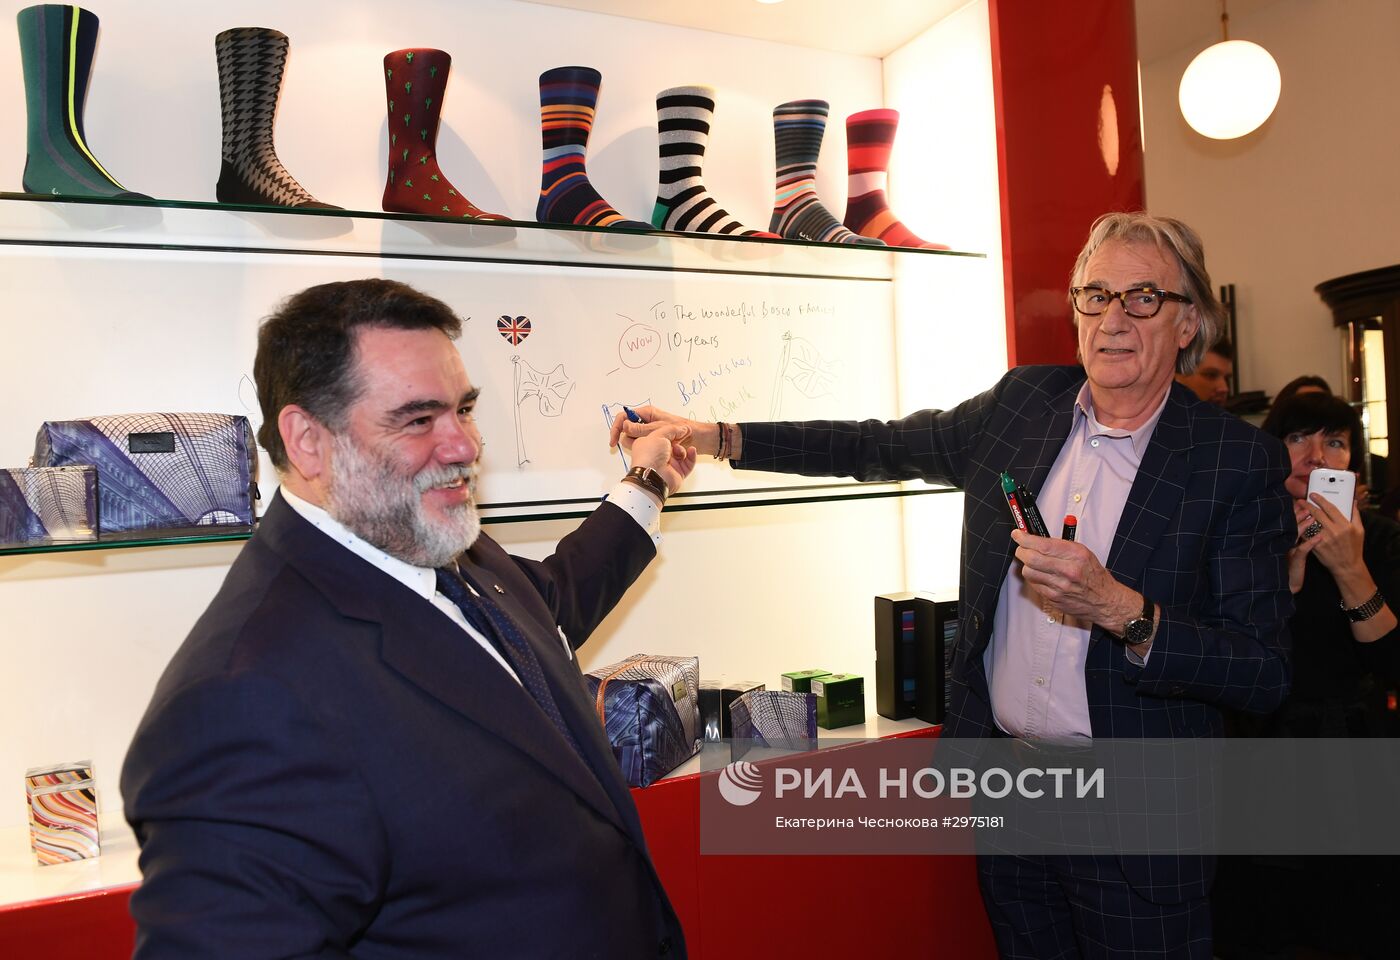 Открытие первого российского представительства марки Paul Smith в ГУМе